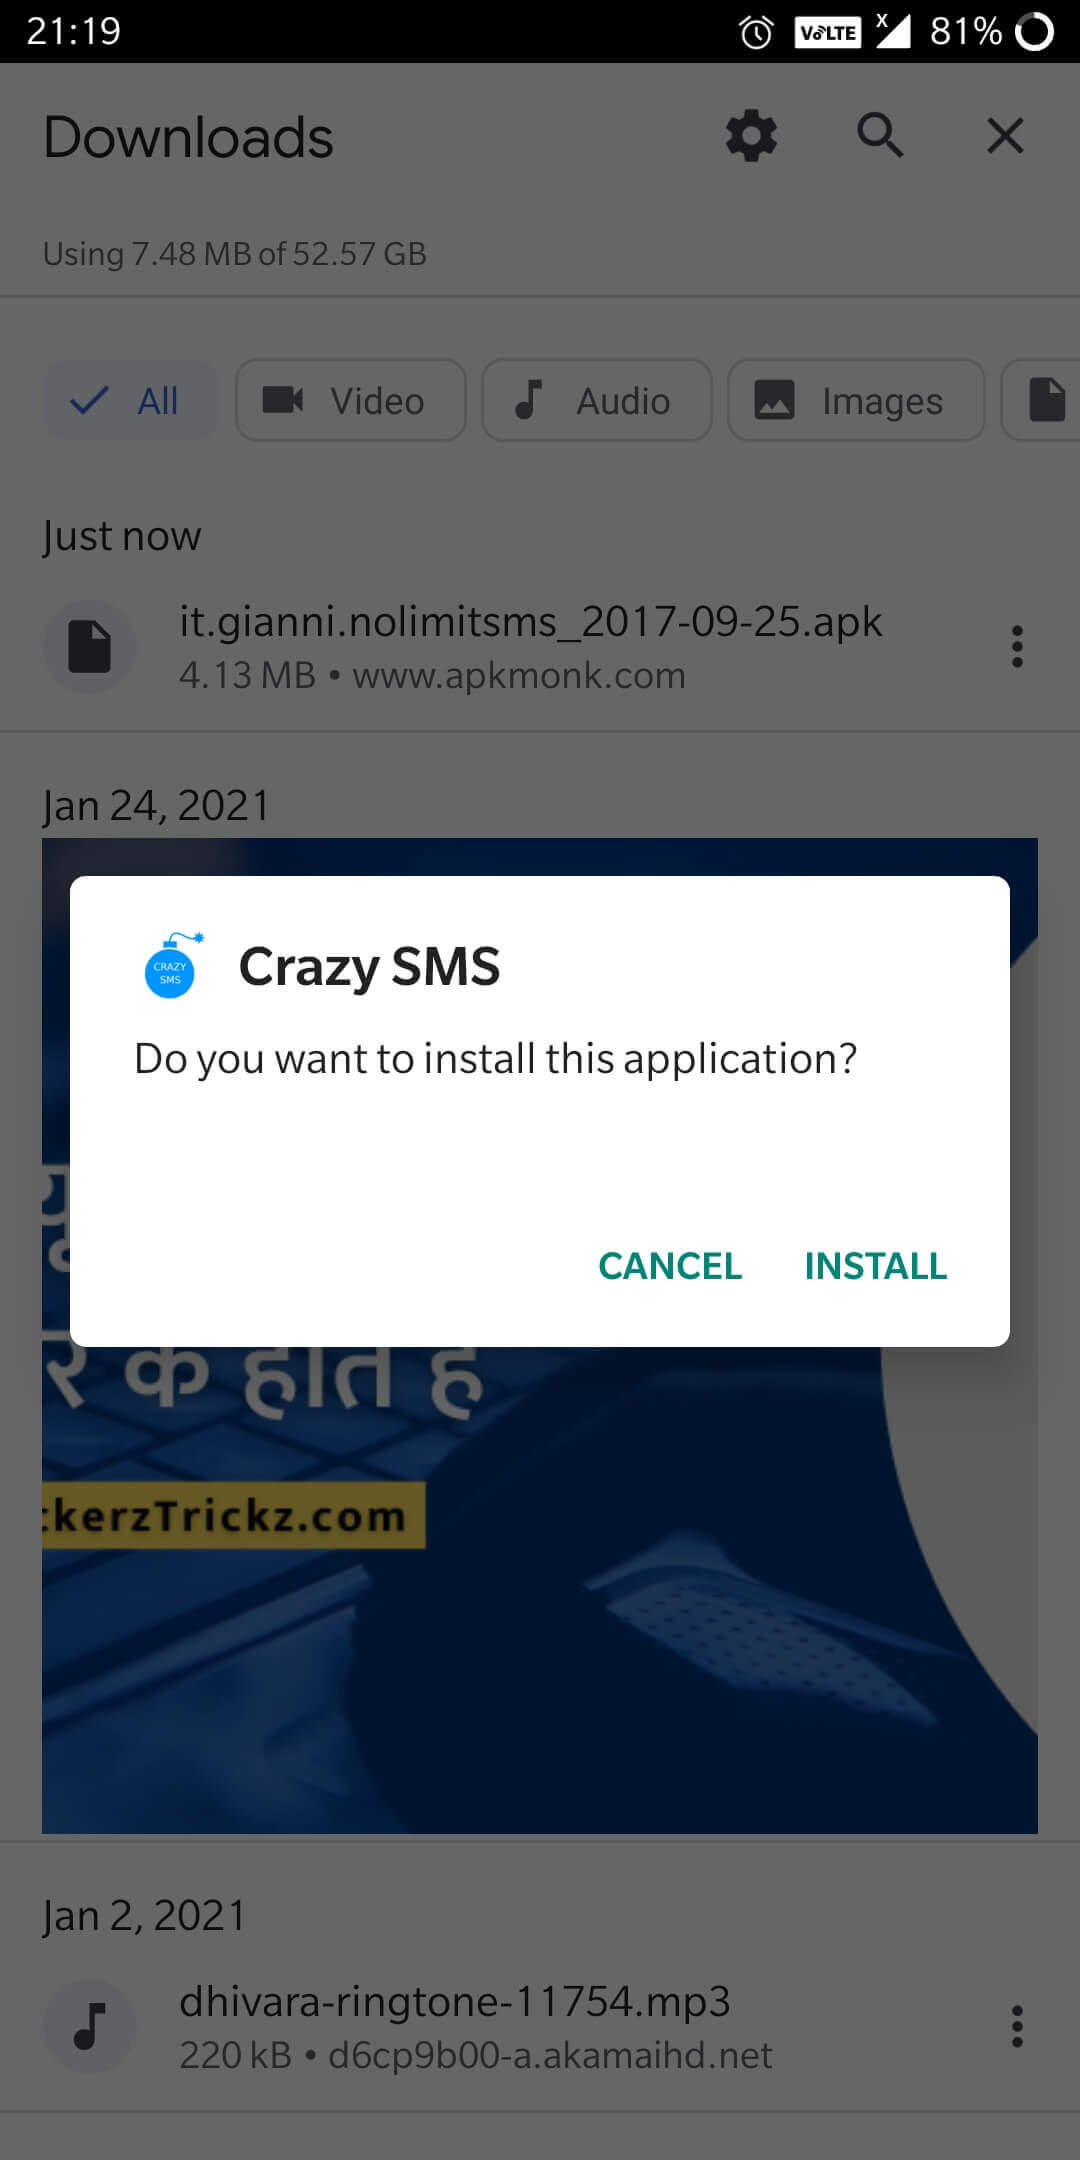 Step 1: Download Crazy SMS Apk